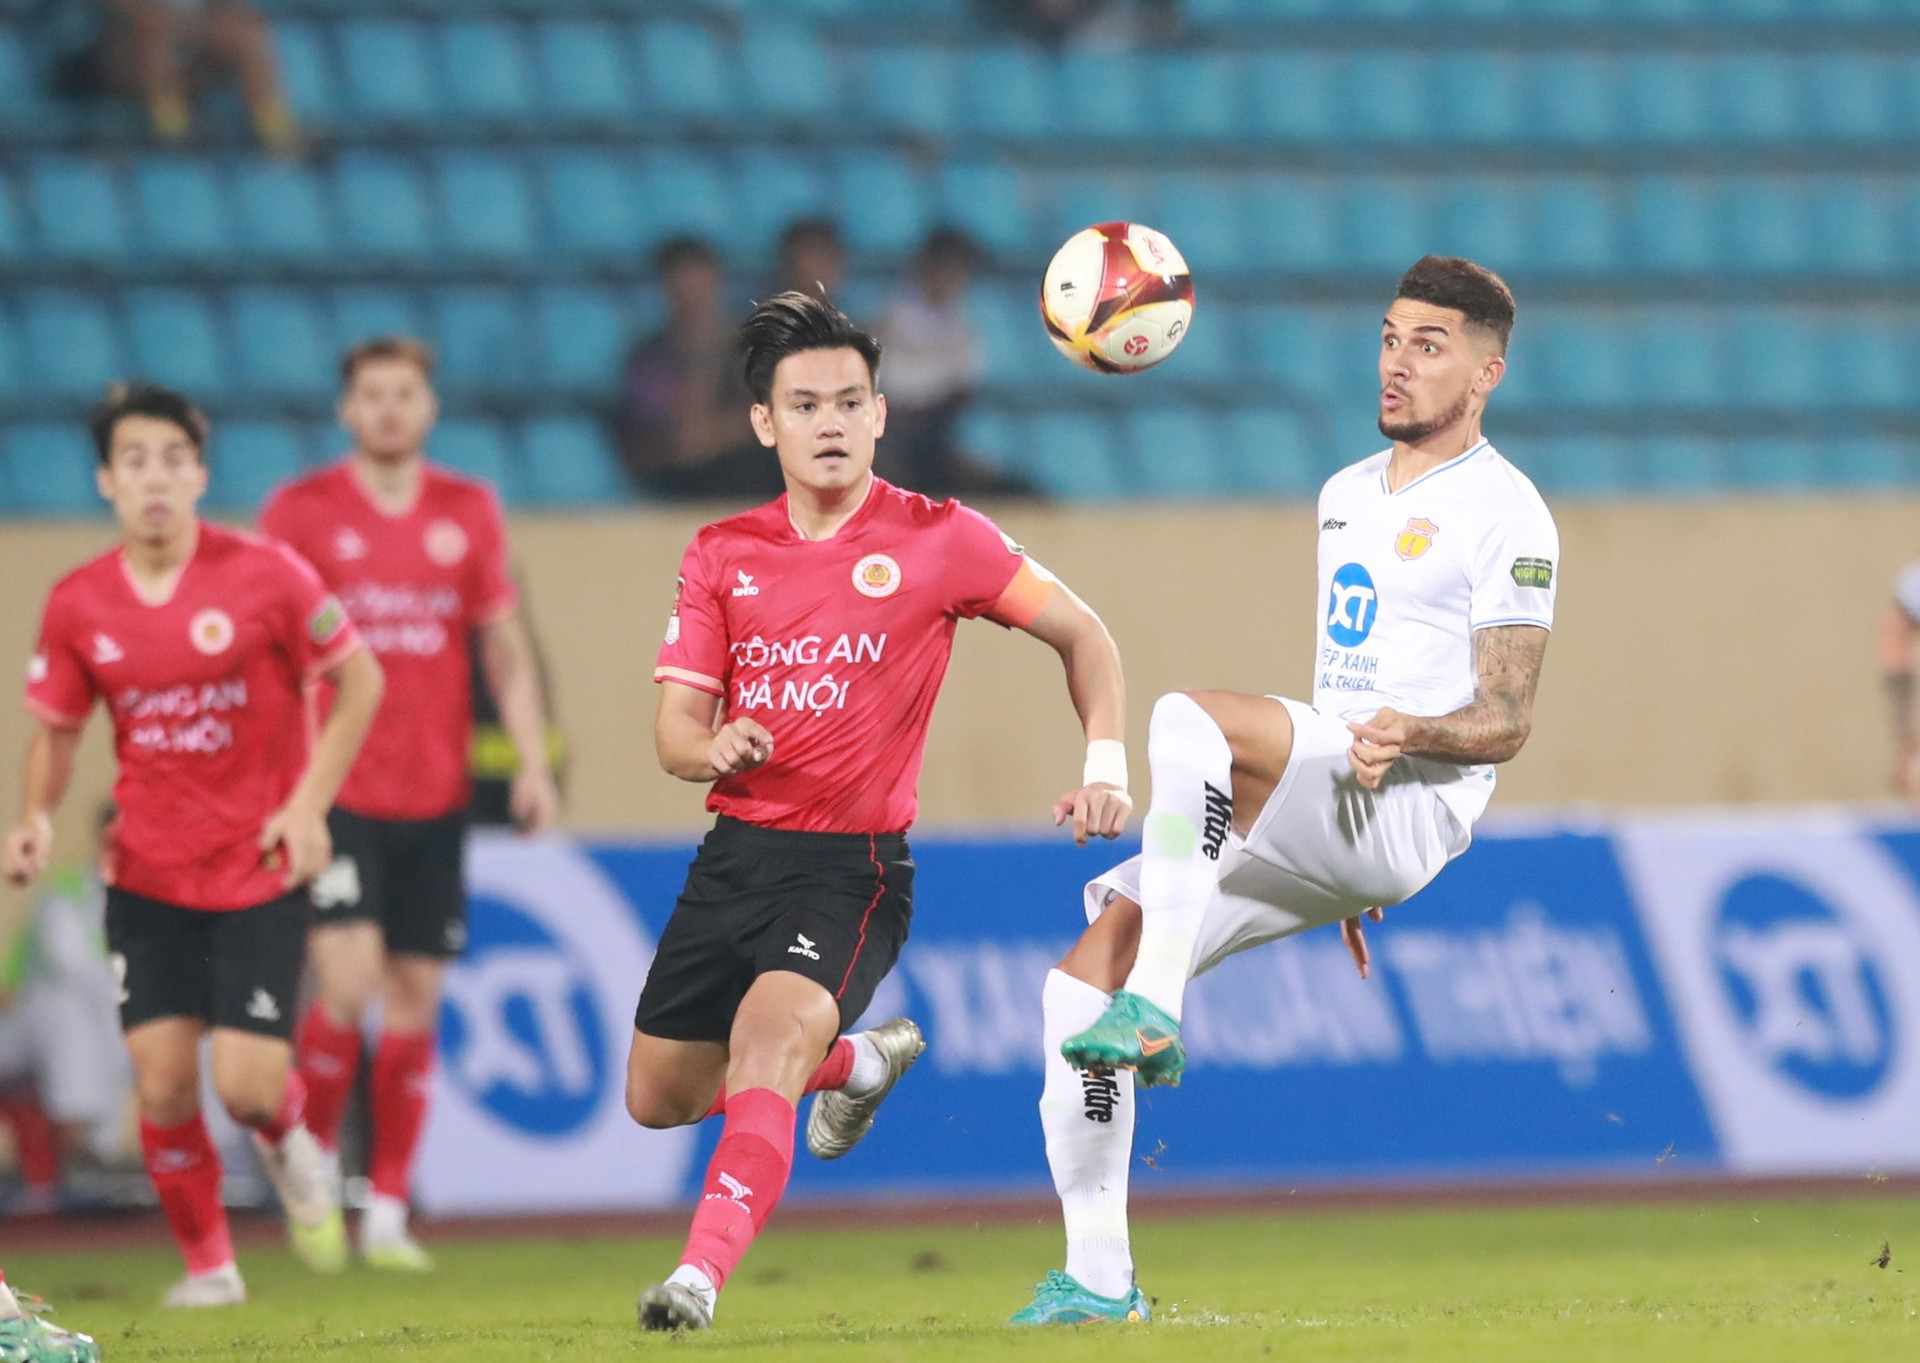 HLV Gong Oh Kyun xô xát với cầu thủ Nam Định ngày Quang Hải ghi bàn - 3